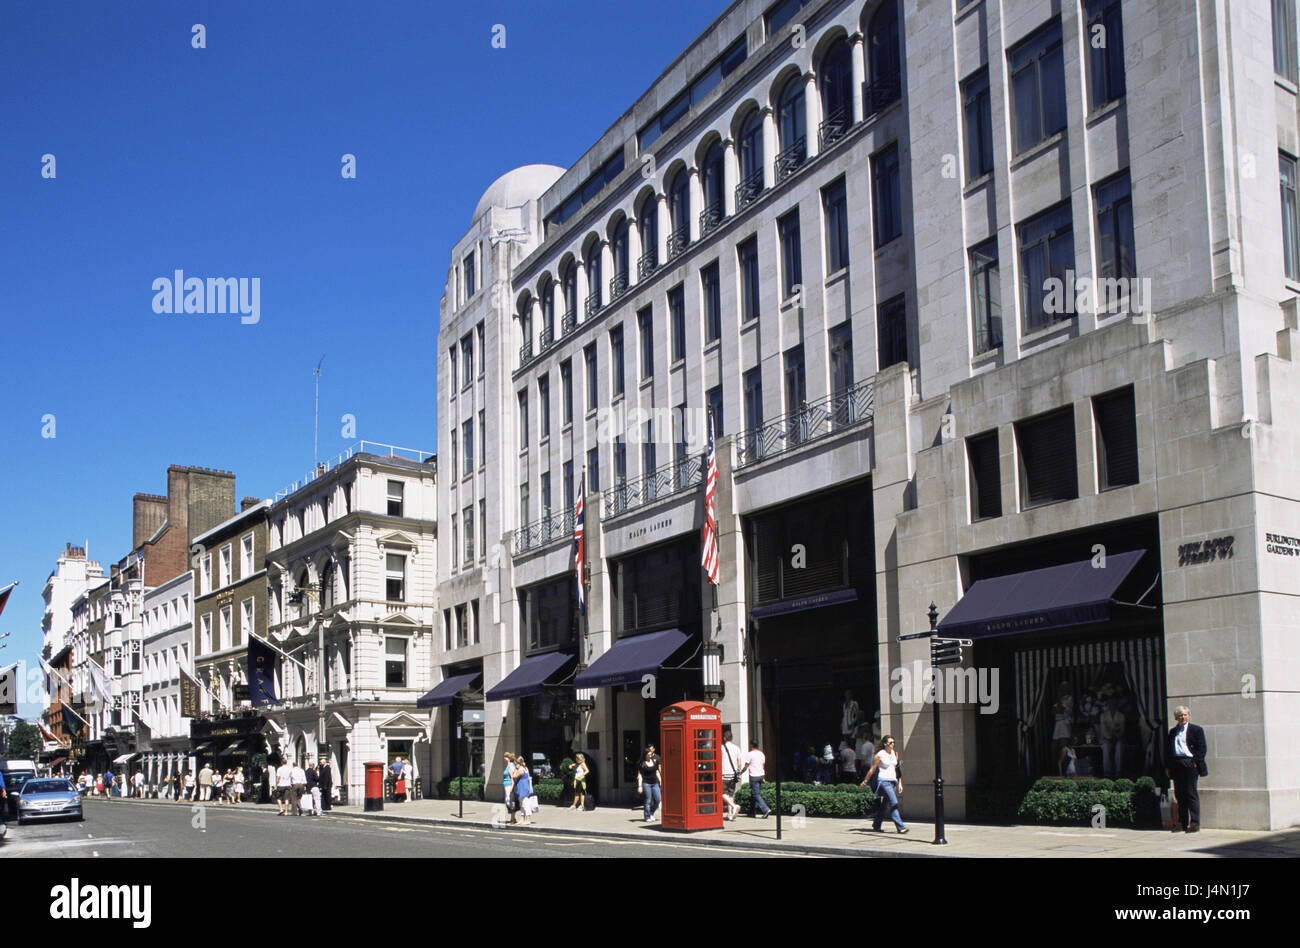 Gran Bretagna, Inghilterra, Londra, Bond Street, passanti, città capitale, strada dello shopping, terrazza, negozi, persone, turisti, acquisto di passeggiate, passeggiate nel centro storico, destinazione, turismo, Foto Stock